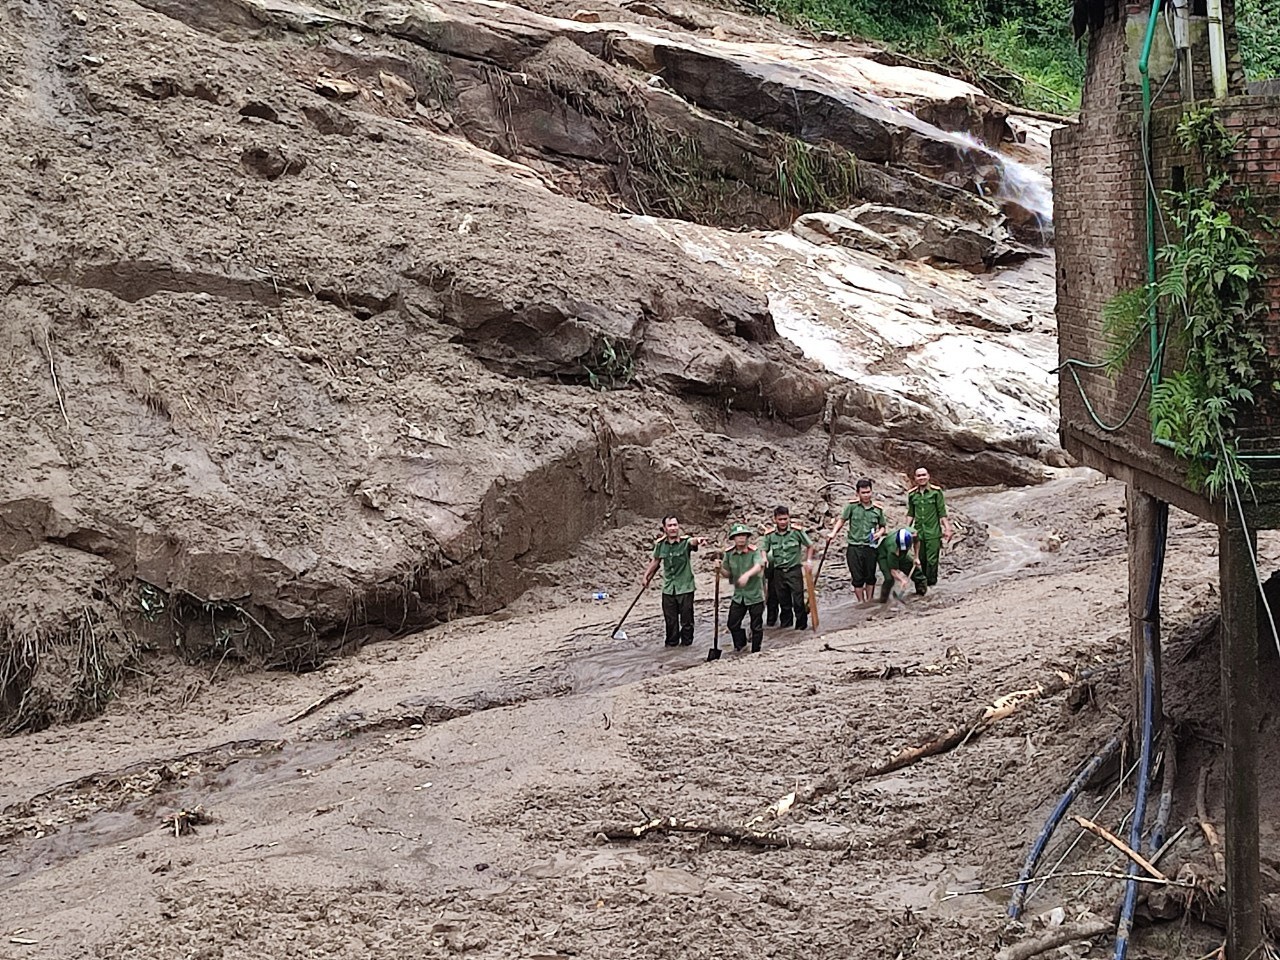 Bê từng viên đá, vén từng cành cây tìm kiếm cứu nạn giúp nhân sau lũ ống ở Lào Cai - Ảnh 4.